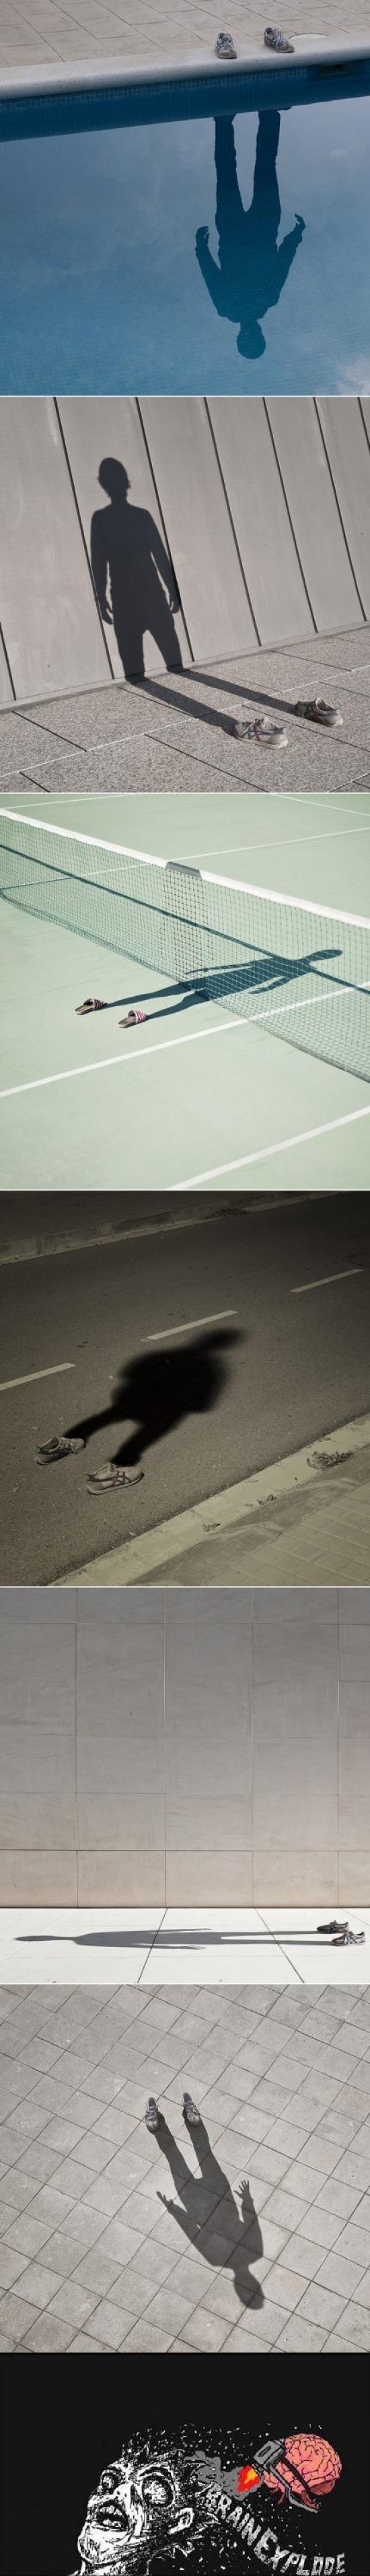 artista,brain explode,fotografías,pol úbeda,sombras,zapatillas,¿el hombre invisible?